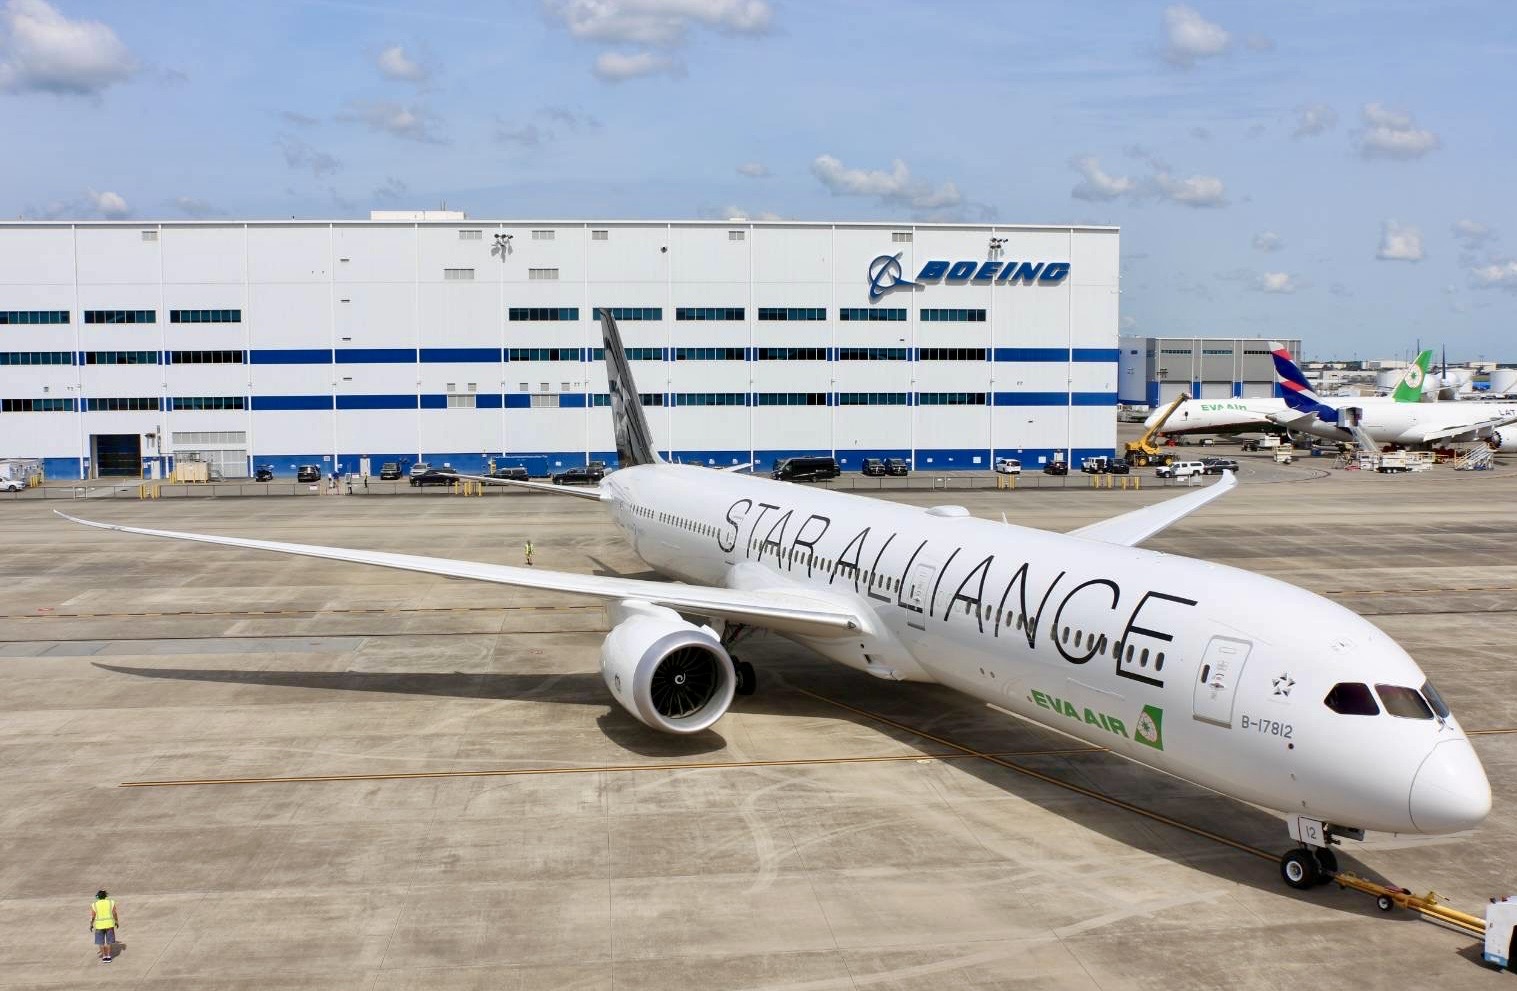 长荣航空入盟十周年  全球首架787-10星空联盟涂装亮相 添加永续航空燃油朝净零碳排迈进